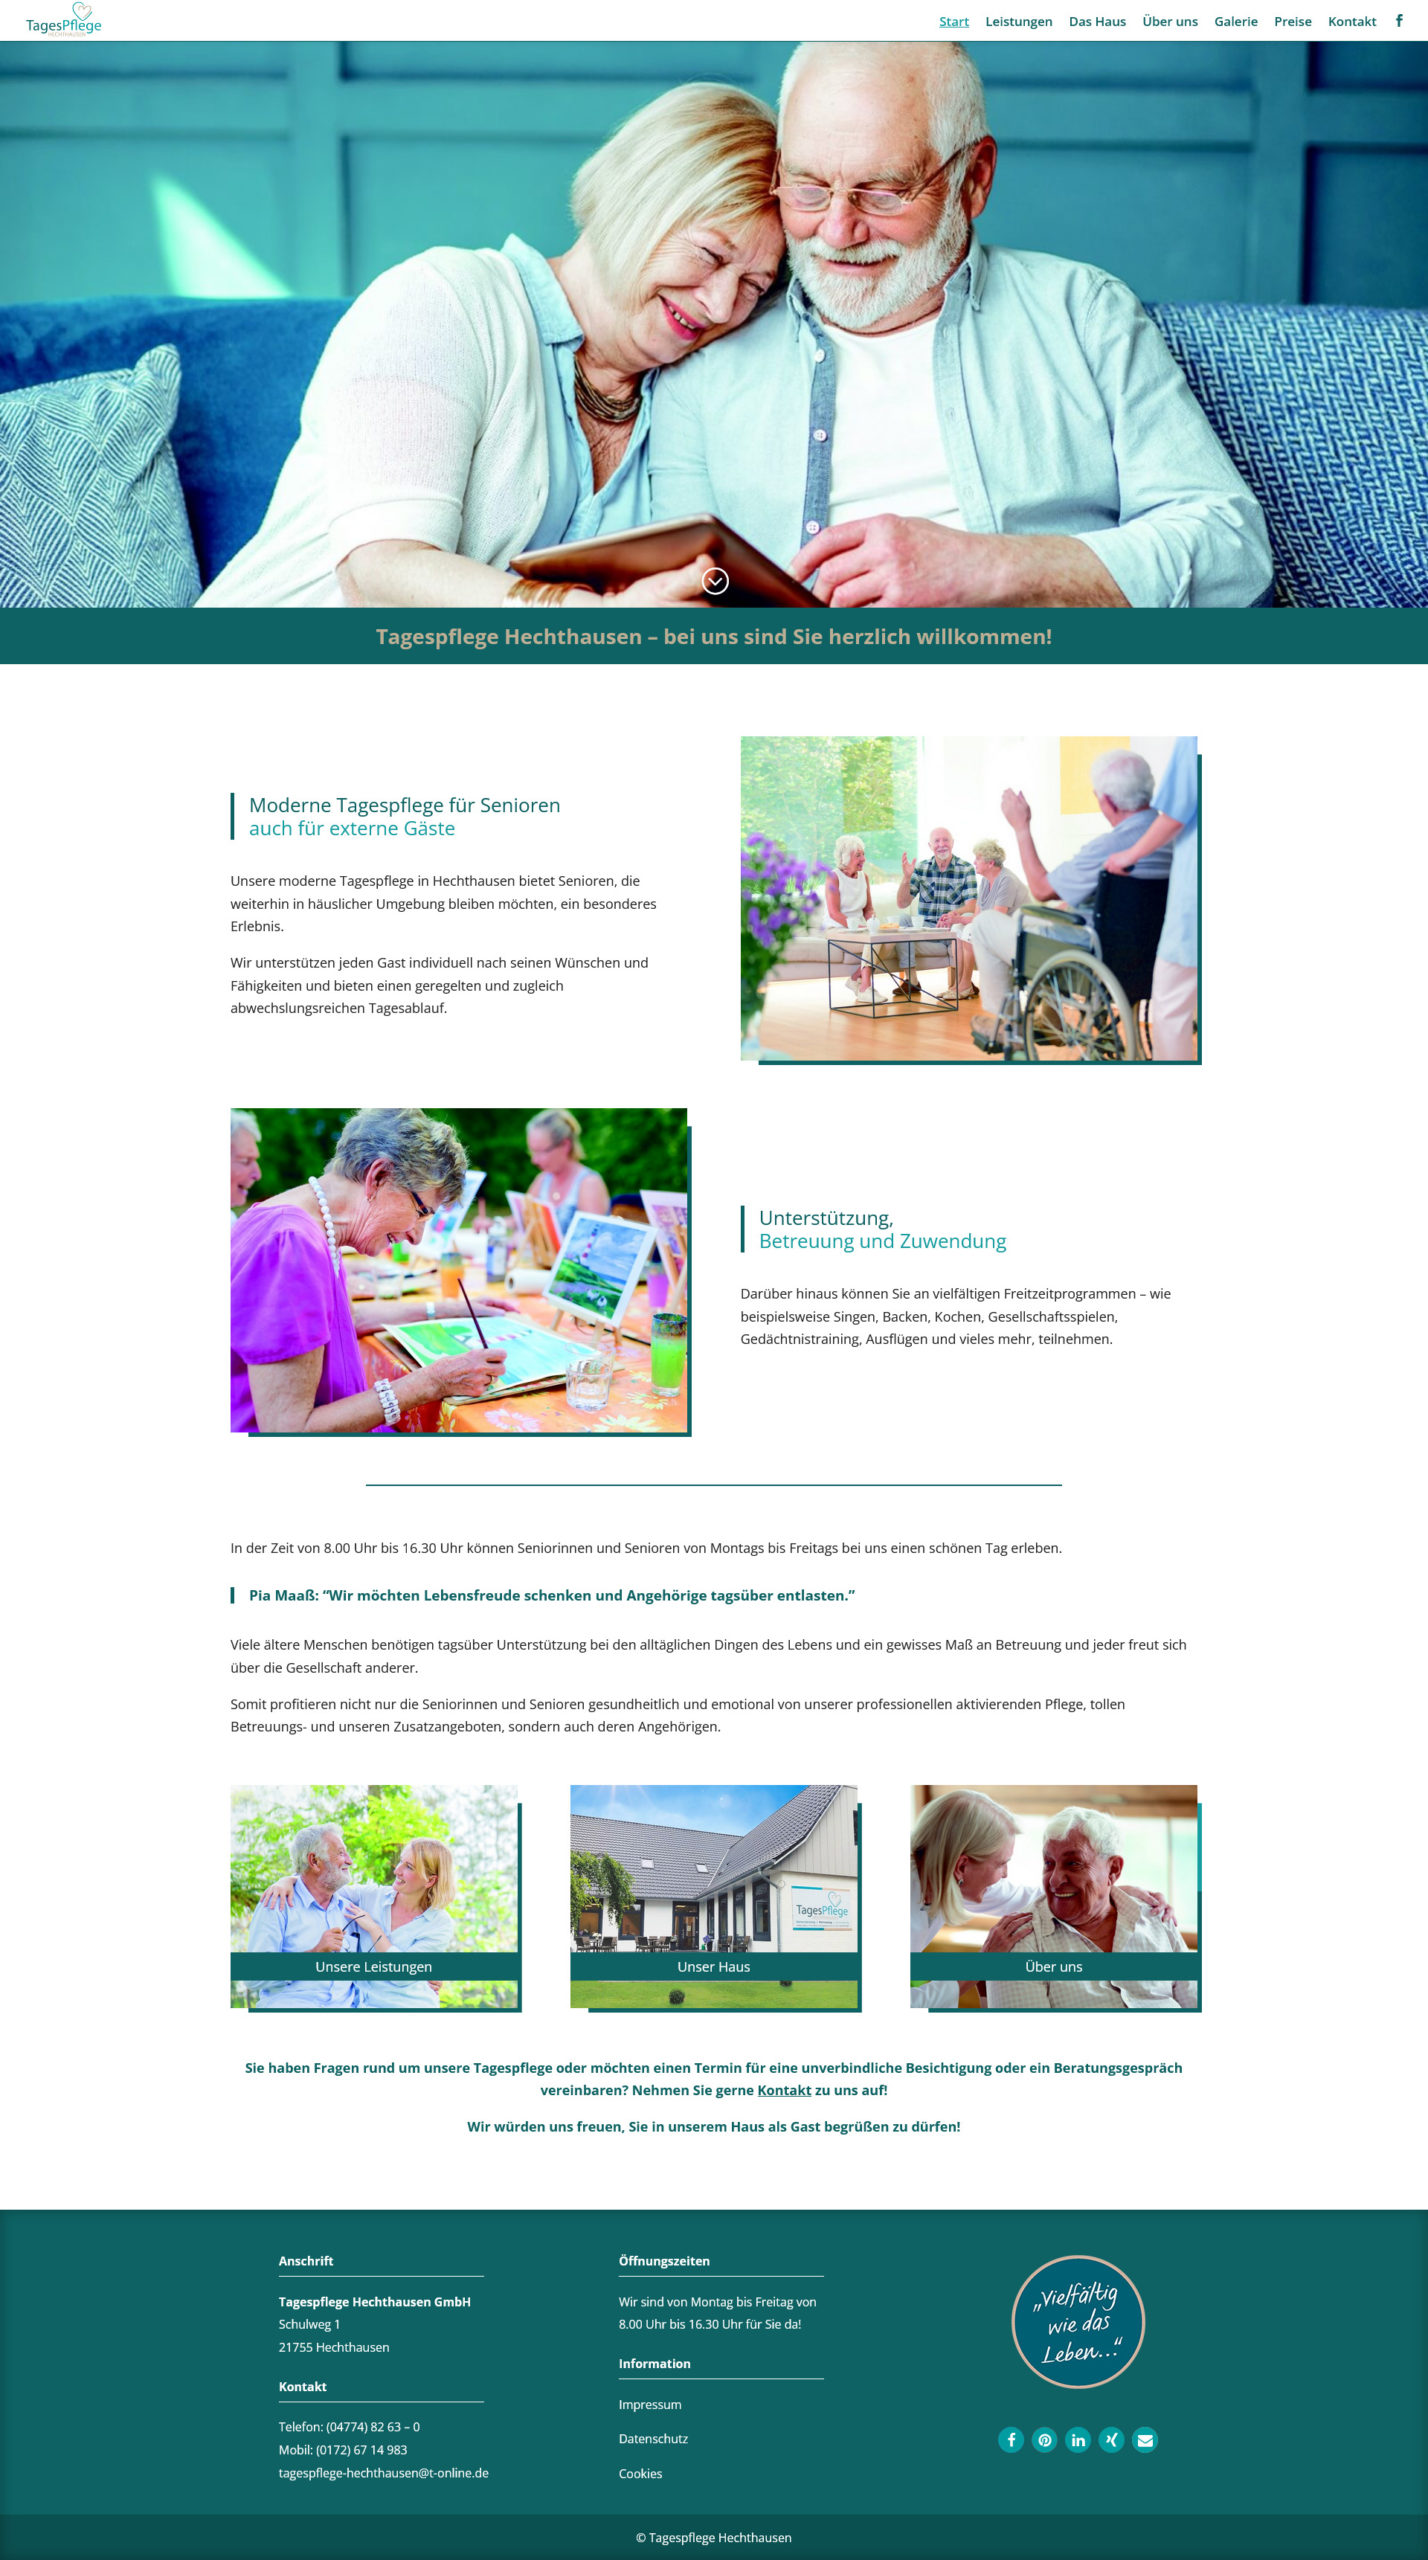 Website erstellt fuer die Tagespflege Hechthausen für Senioren - tagespflege-hechthausen.de